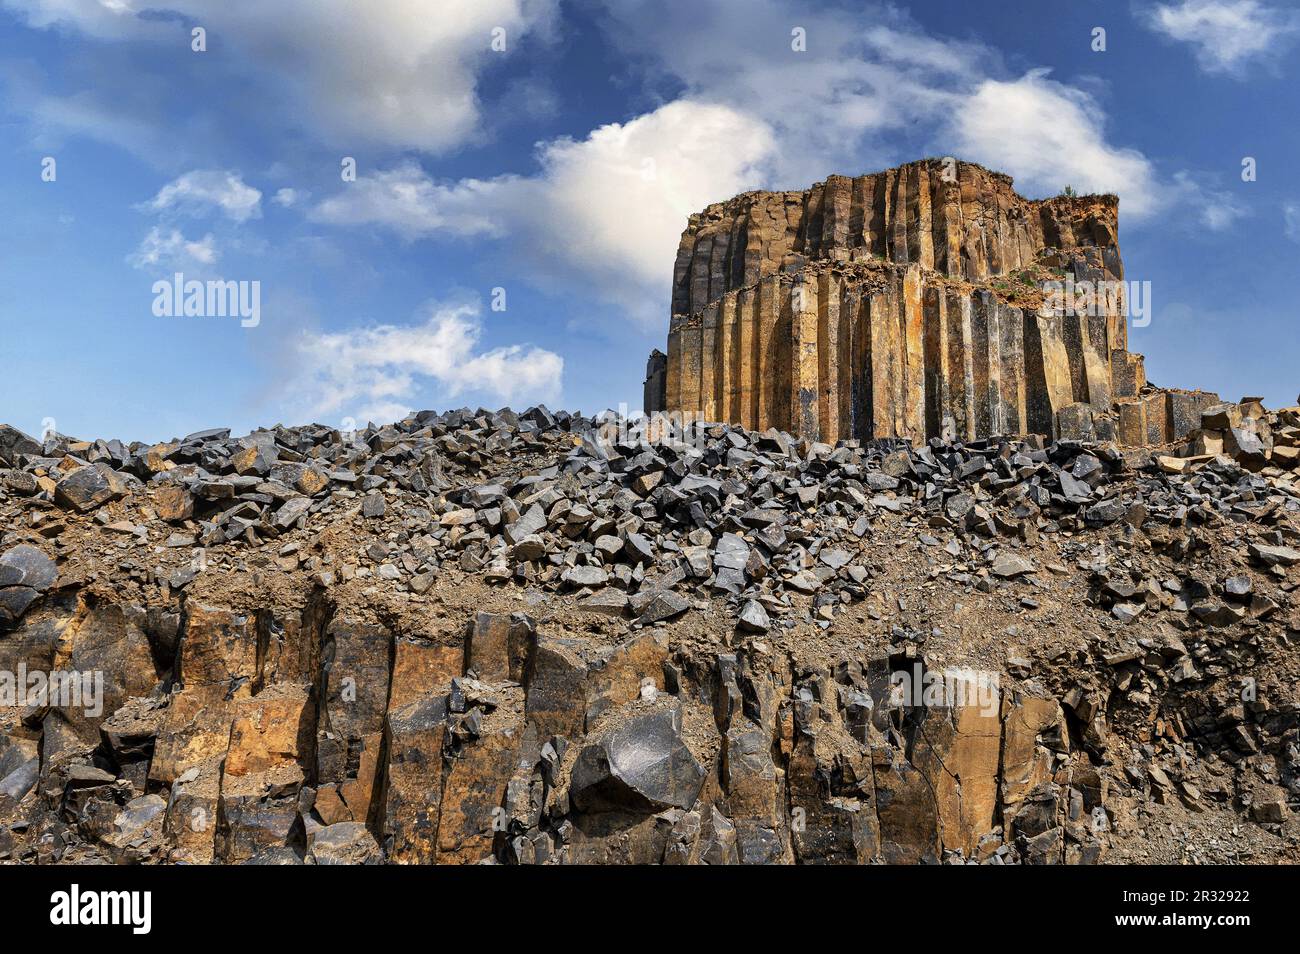 Cantera de basalto. Cantera columnar de basalto en verano. Piedras volcánicas. Formación geológica de roca basáltica. Foto de stock